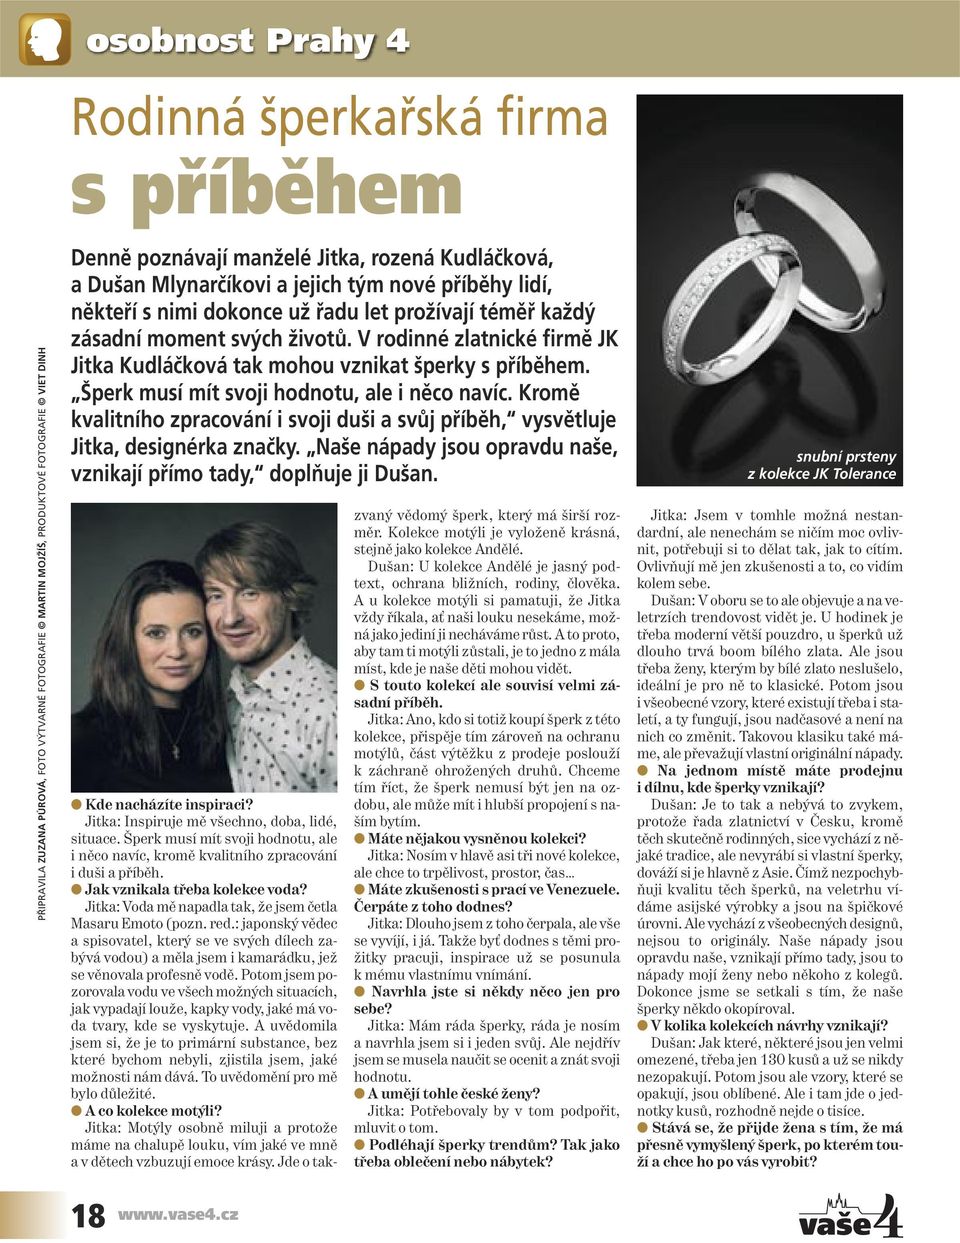 V rodinné zlatnické firmě JK Jitka Kudláčková tak mohou vznikat šperky s příběhem. Šperk musí mít svoji hodnotu, ale i něco navíc.